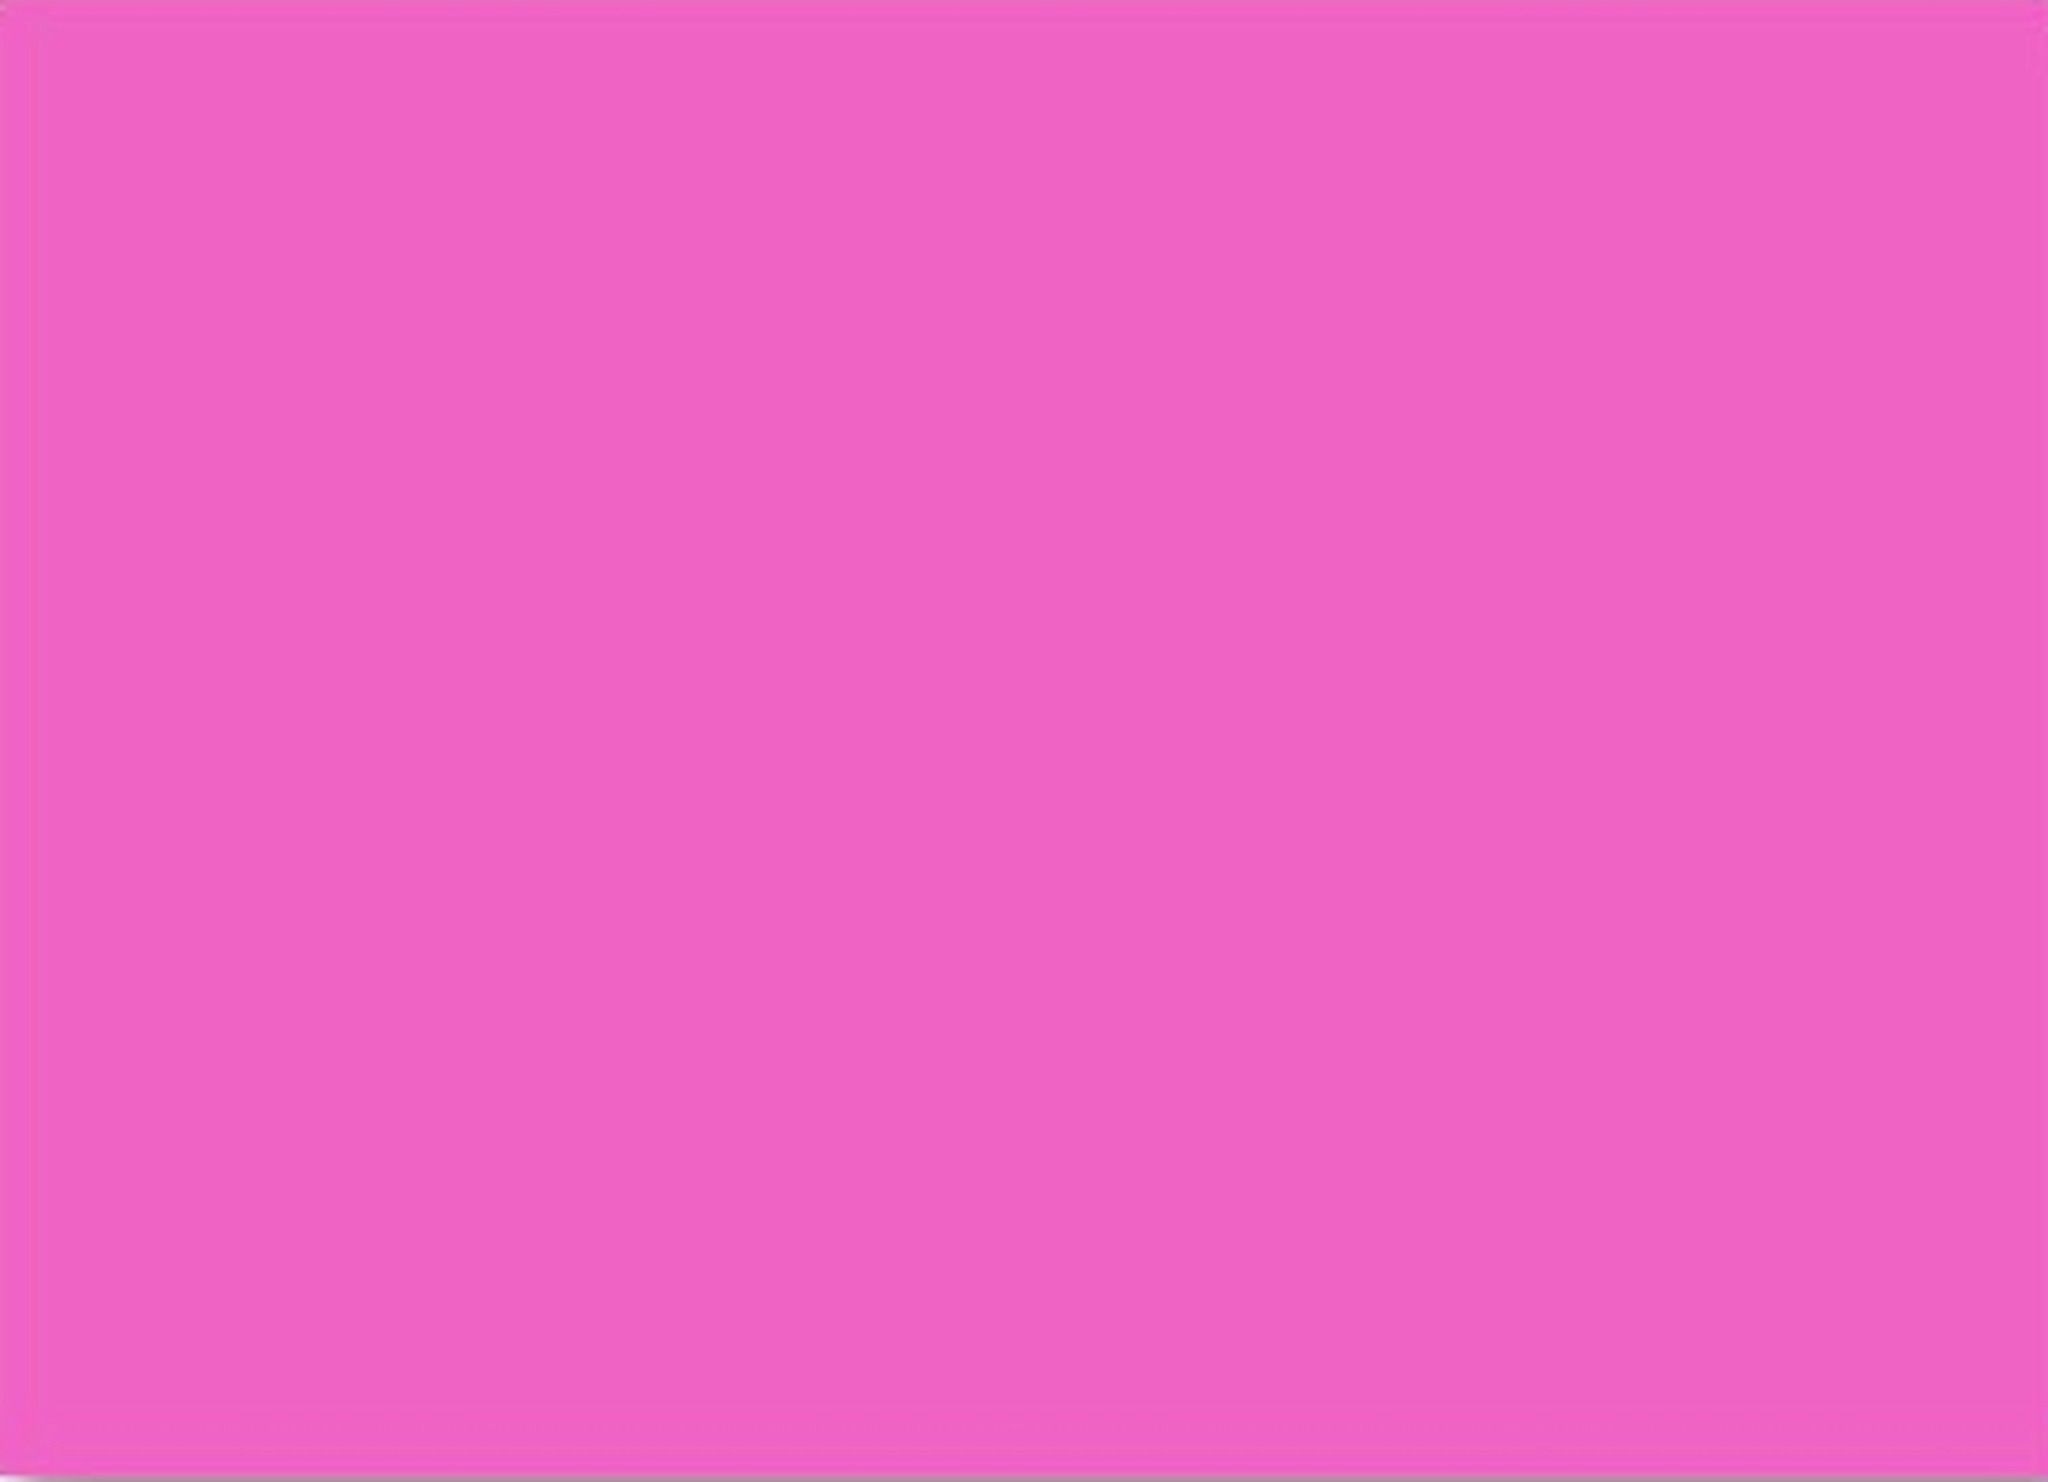 Chào mừng bạn đến với thế giới Hình nền Neon màu hồng đầy sáng tạo và hiện đại. Được thiết kế với những đường nét đẹp mắt, hình nền Neon màu hồng sẽ giúp cho màn hình của bạn trở nên độc đáo và thu hút. Màu hồng tươi sáng tỏa sáng đến mọi góc cạnh, dành cho những ai yêu thích sự sang trọng và hiện đại.